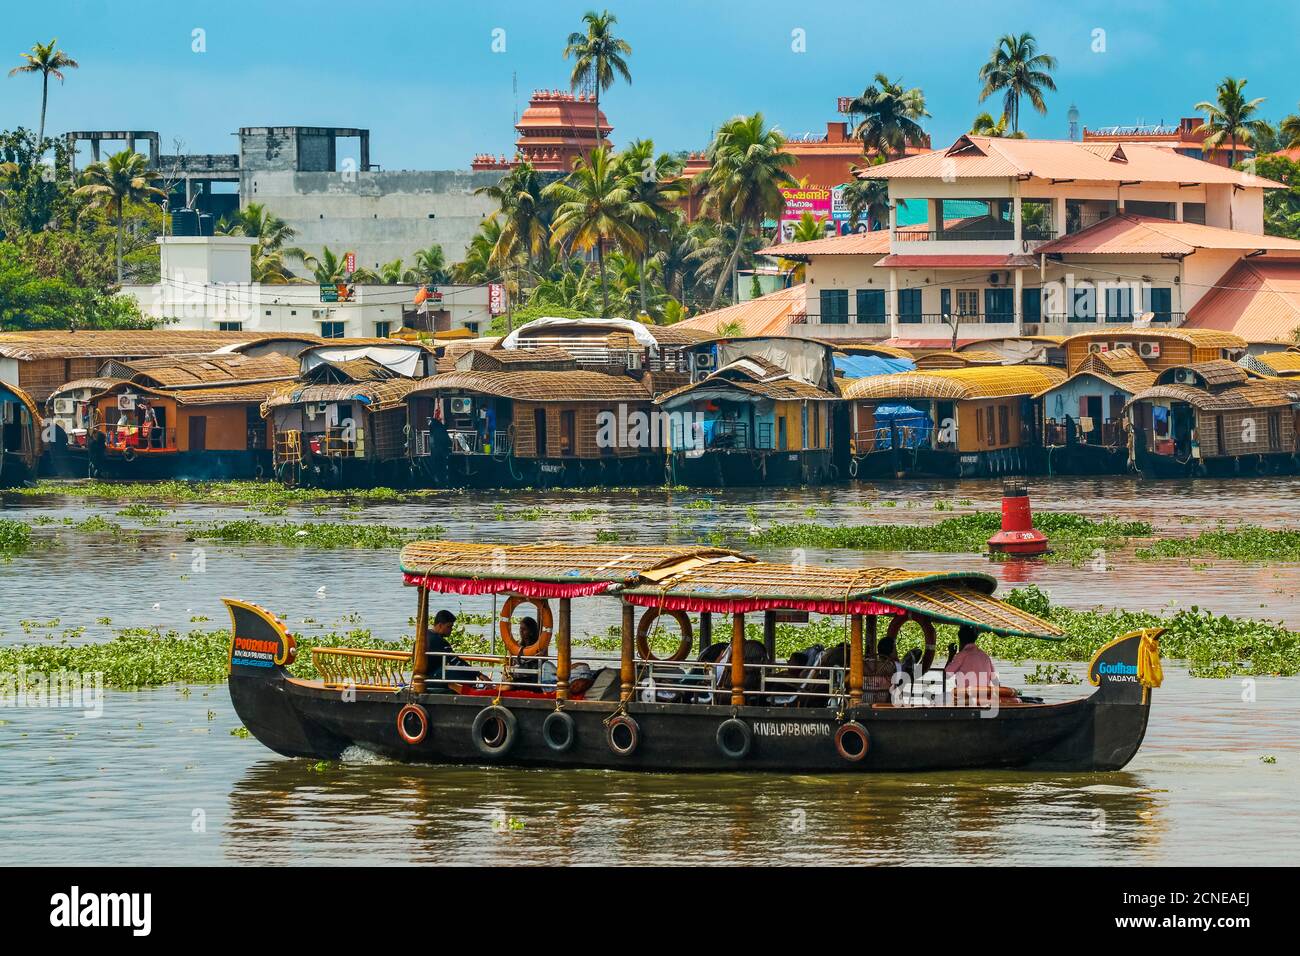 Paseo en barco y casas flotantes para los populares cruceros de aguas atrás, una de las principales atracciones turísticas, Alappuzha (Alleppey), Kerala, India, Asia Foto de stock